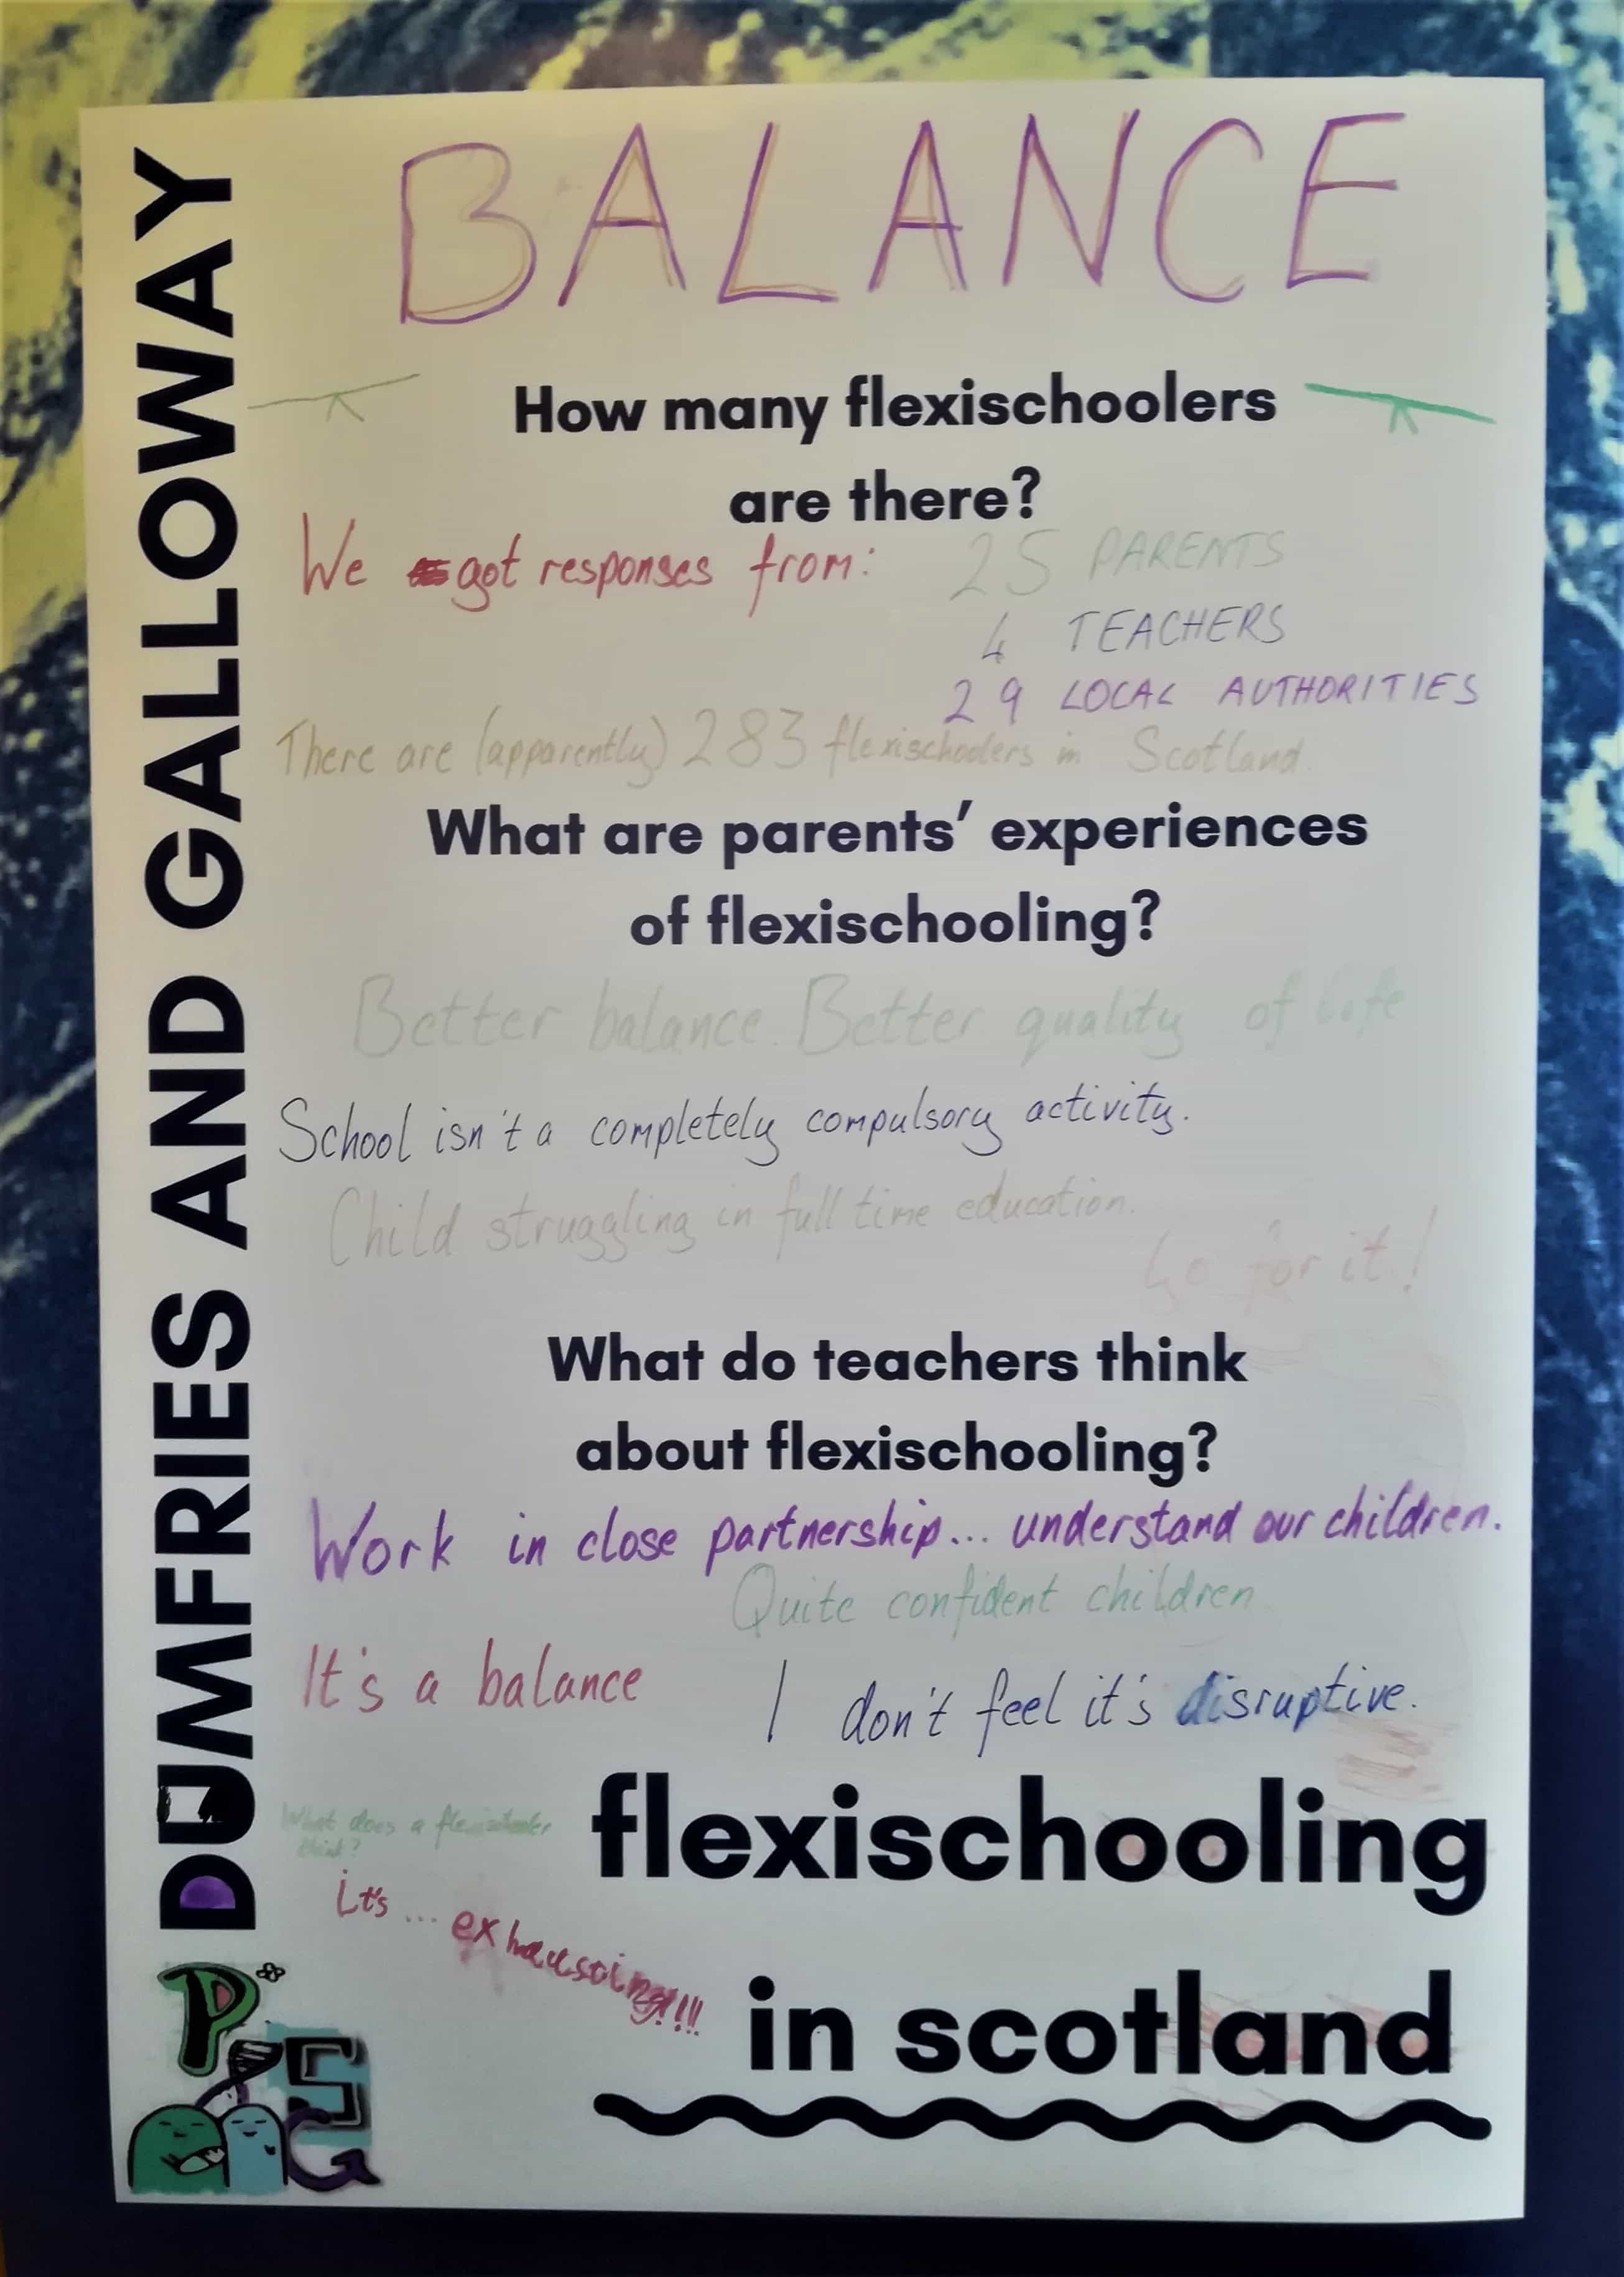 poster describing flexischooling research